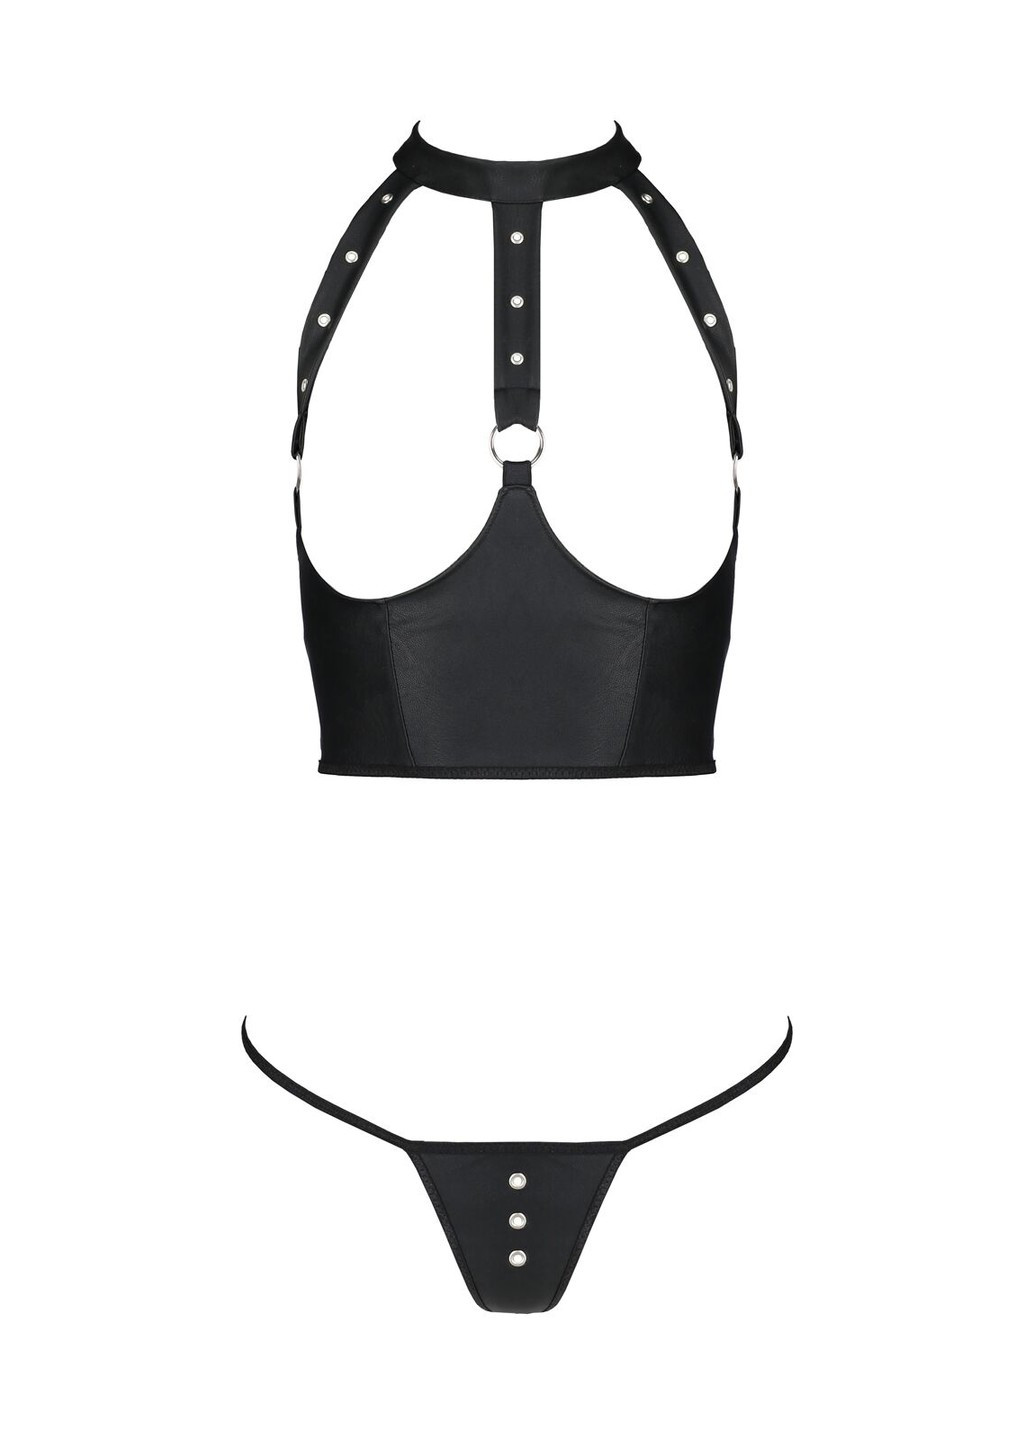 Чорний комплект білизни з відкритими грудьми geneviaet with open bra, корсет, стрі Passion